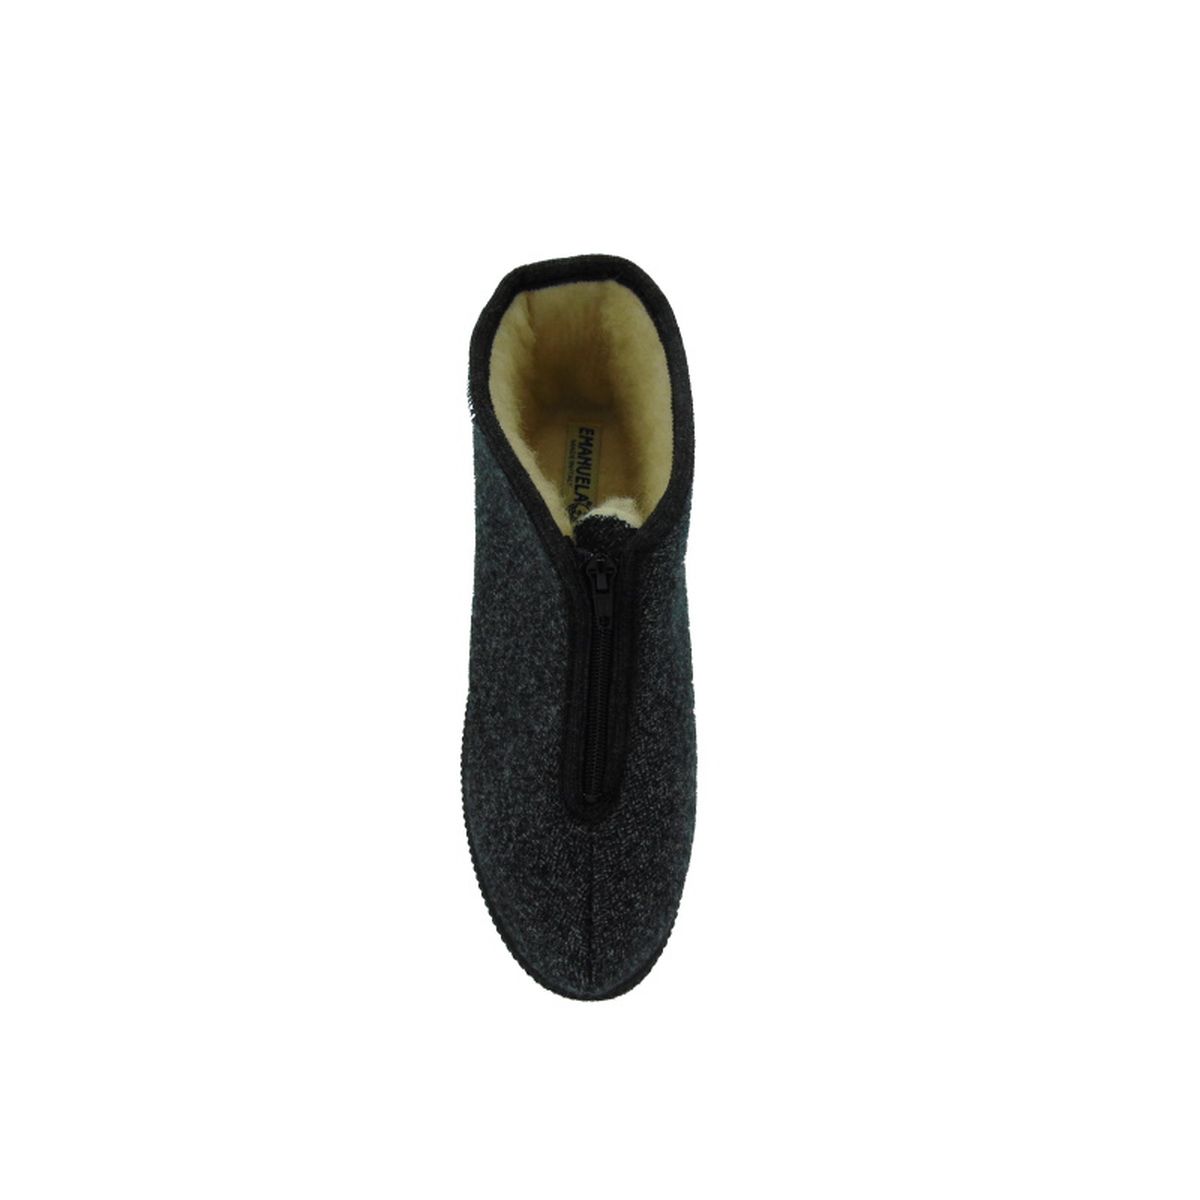 Pantofola Uomo con zip, interno lana Emanuela 566 Grigio Edgarimg_2